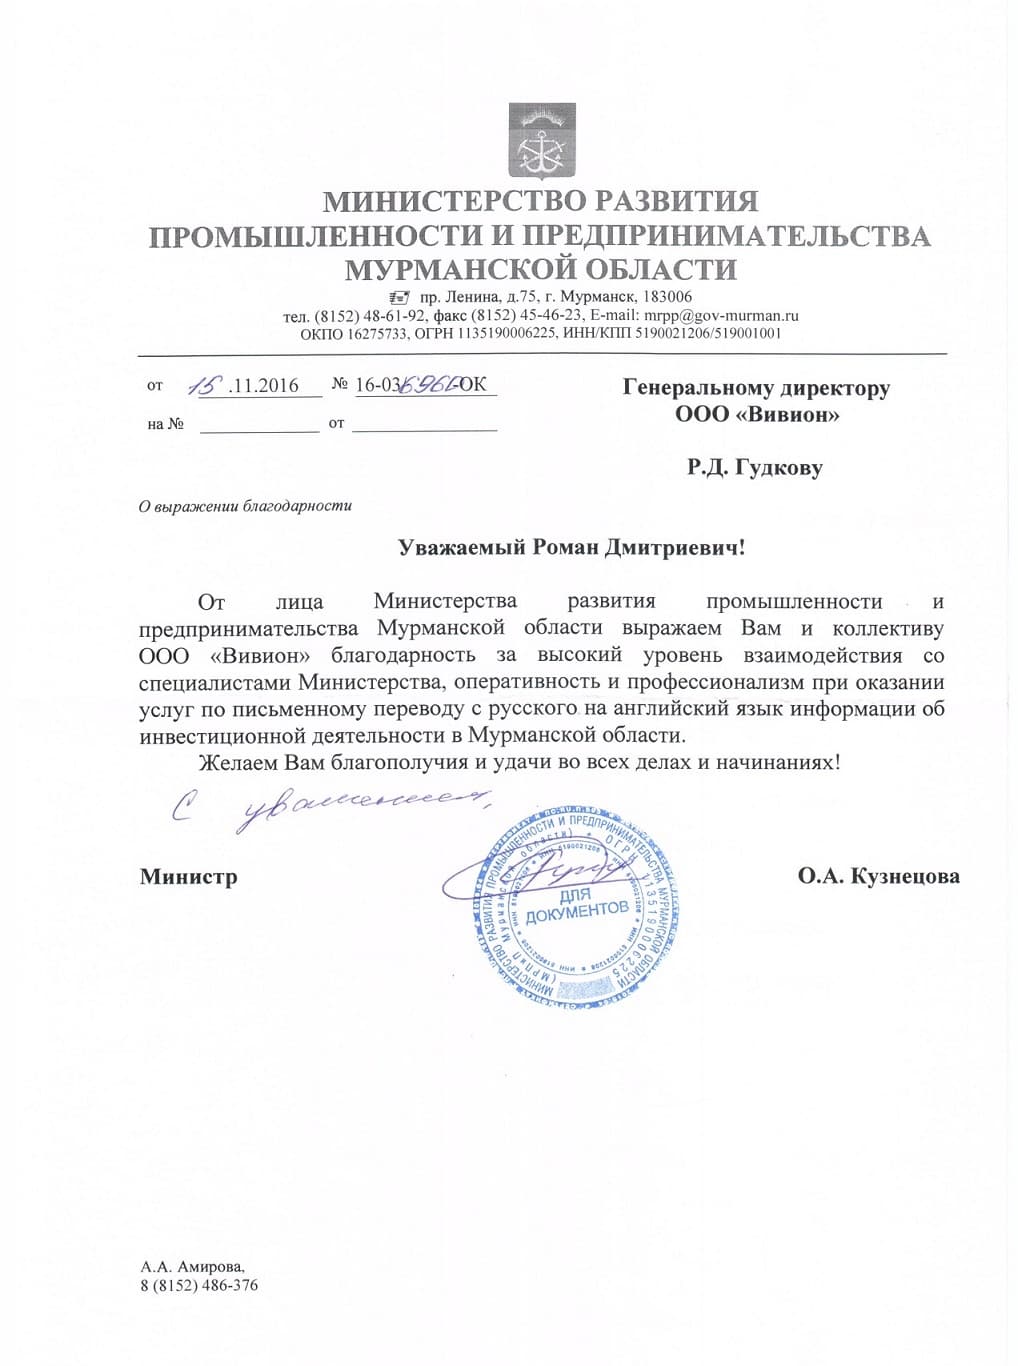 Министерство развития промышленности и предпринимательства Мурманской области